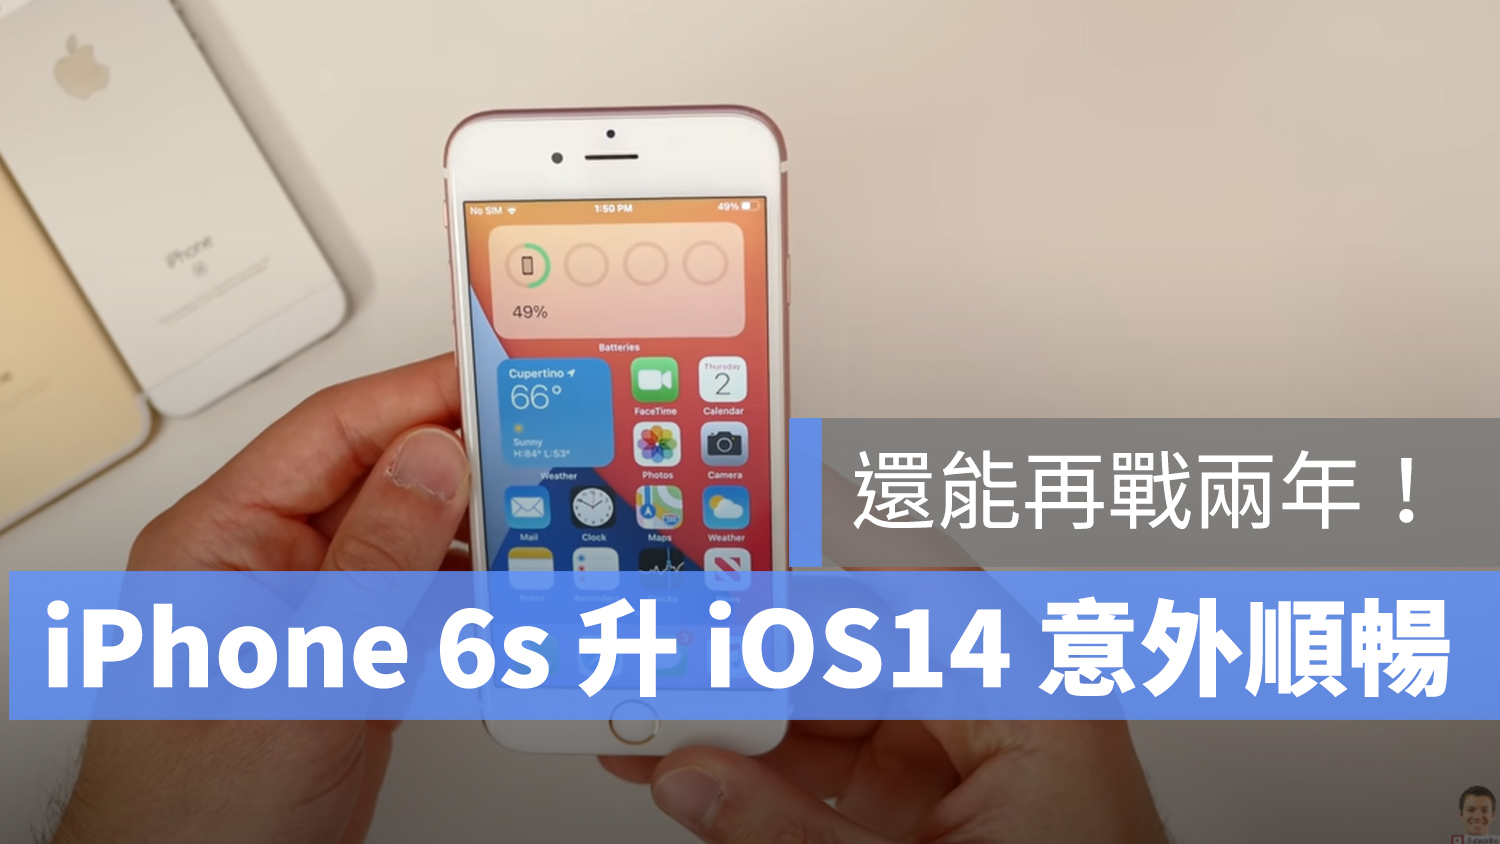 ioS 14 iPhone 6s